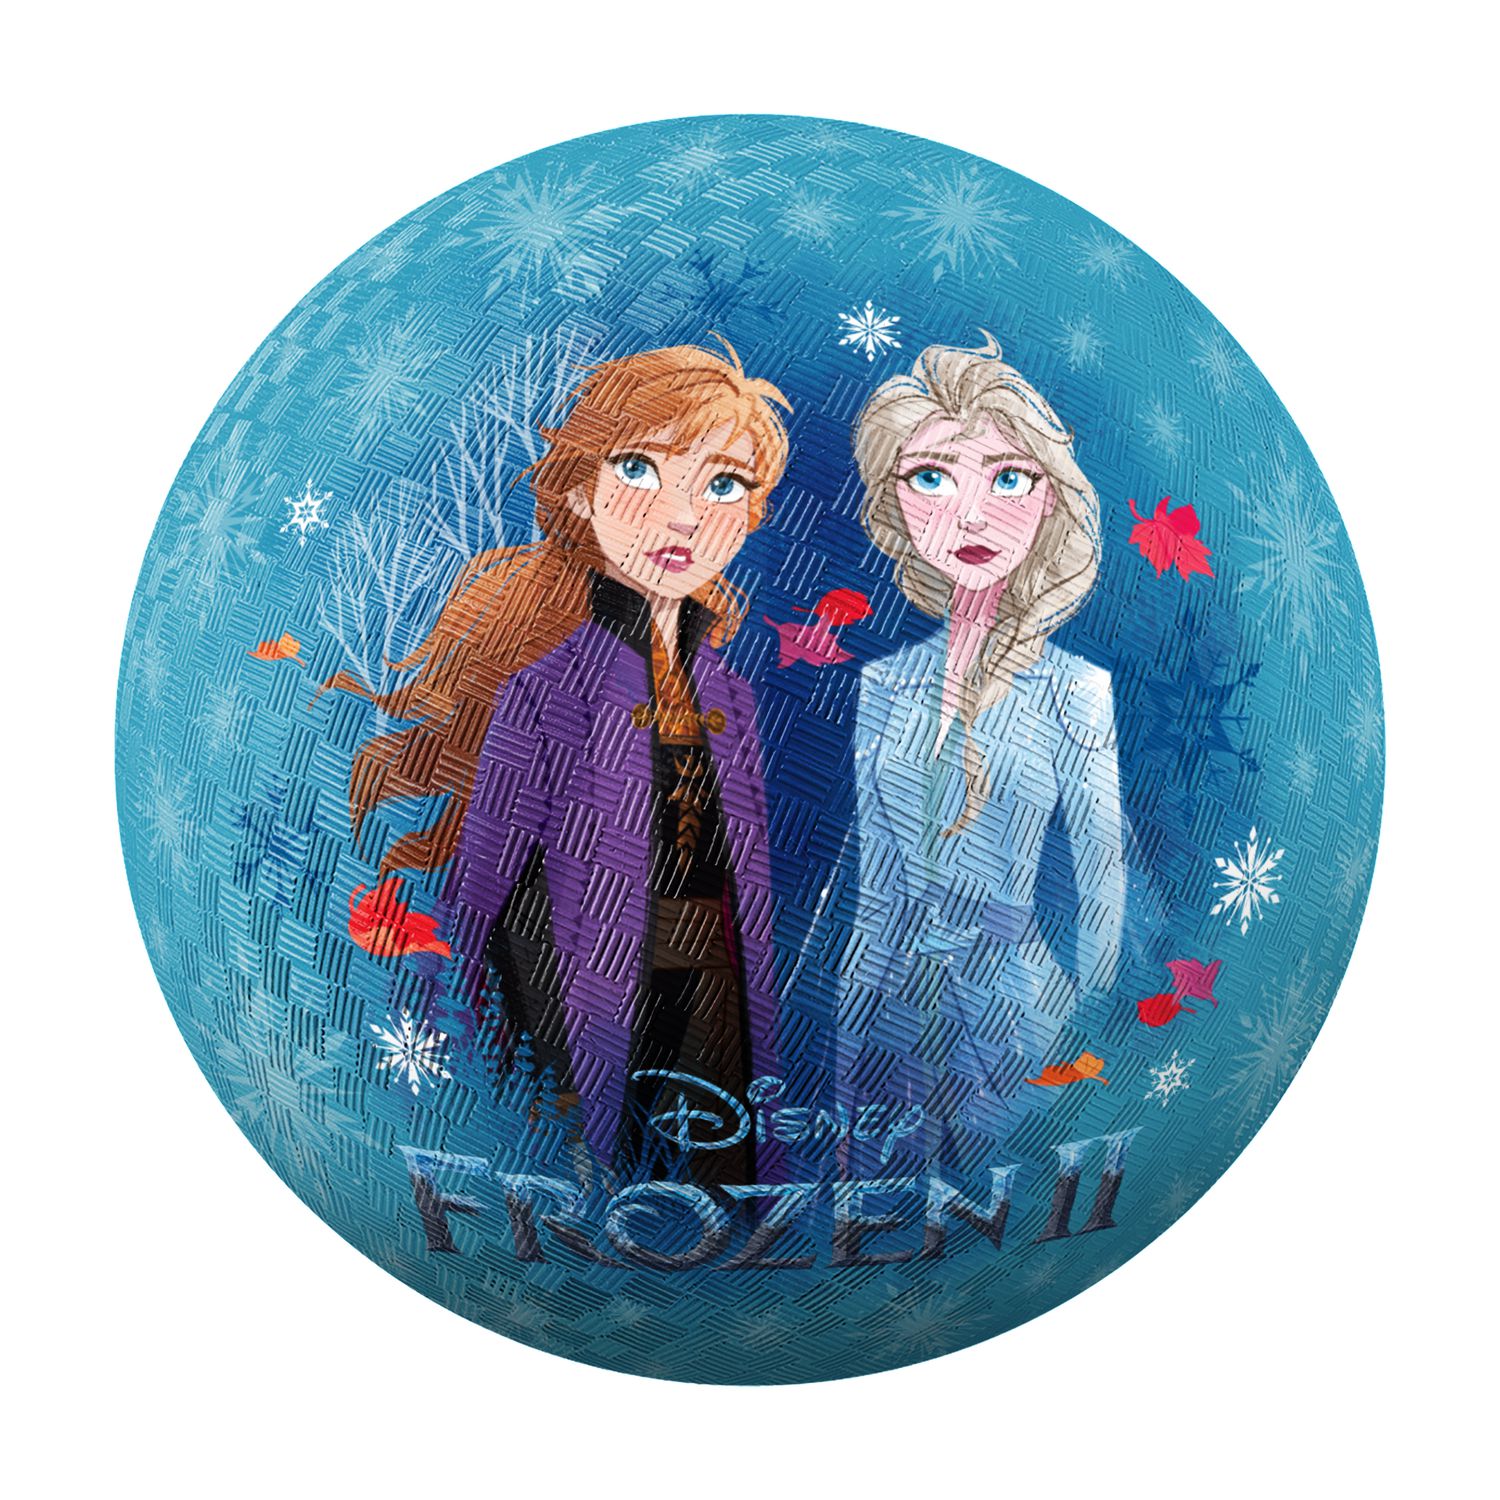 Ensemble de ballons Frozen Paquet de ballons- La Reine des neiges - Fête